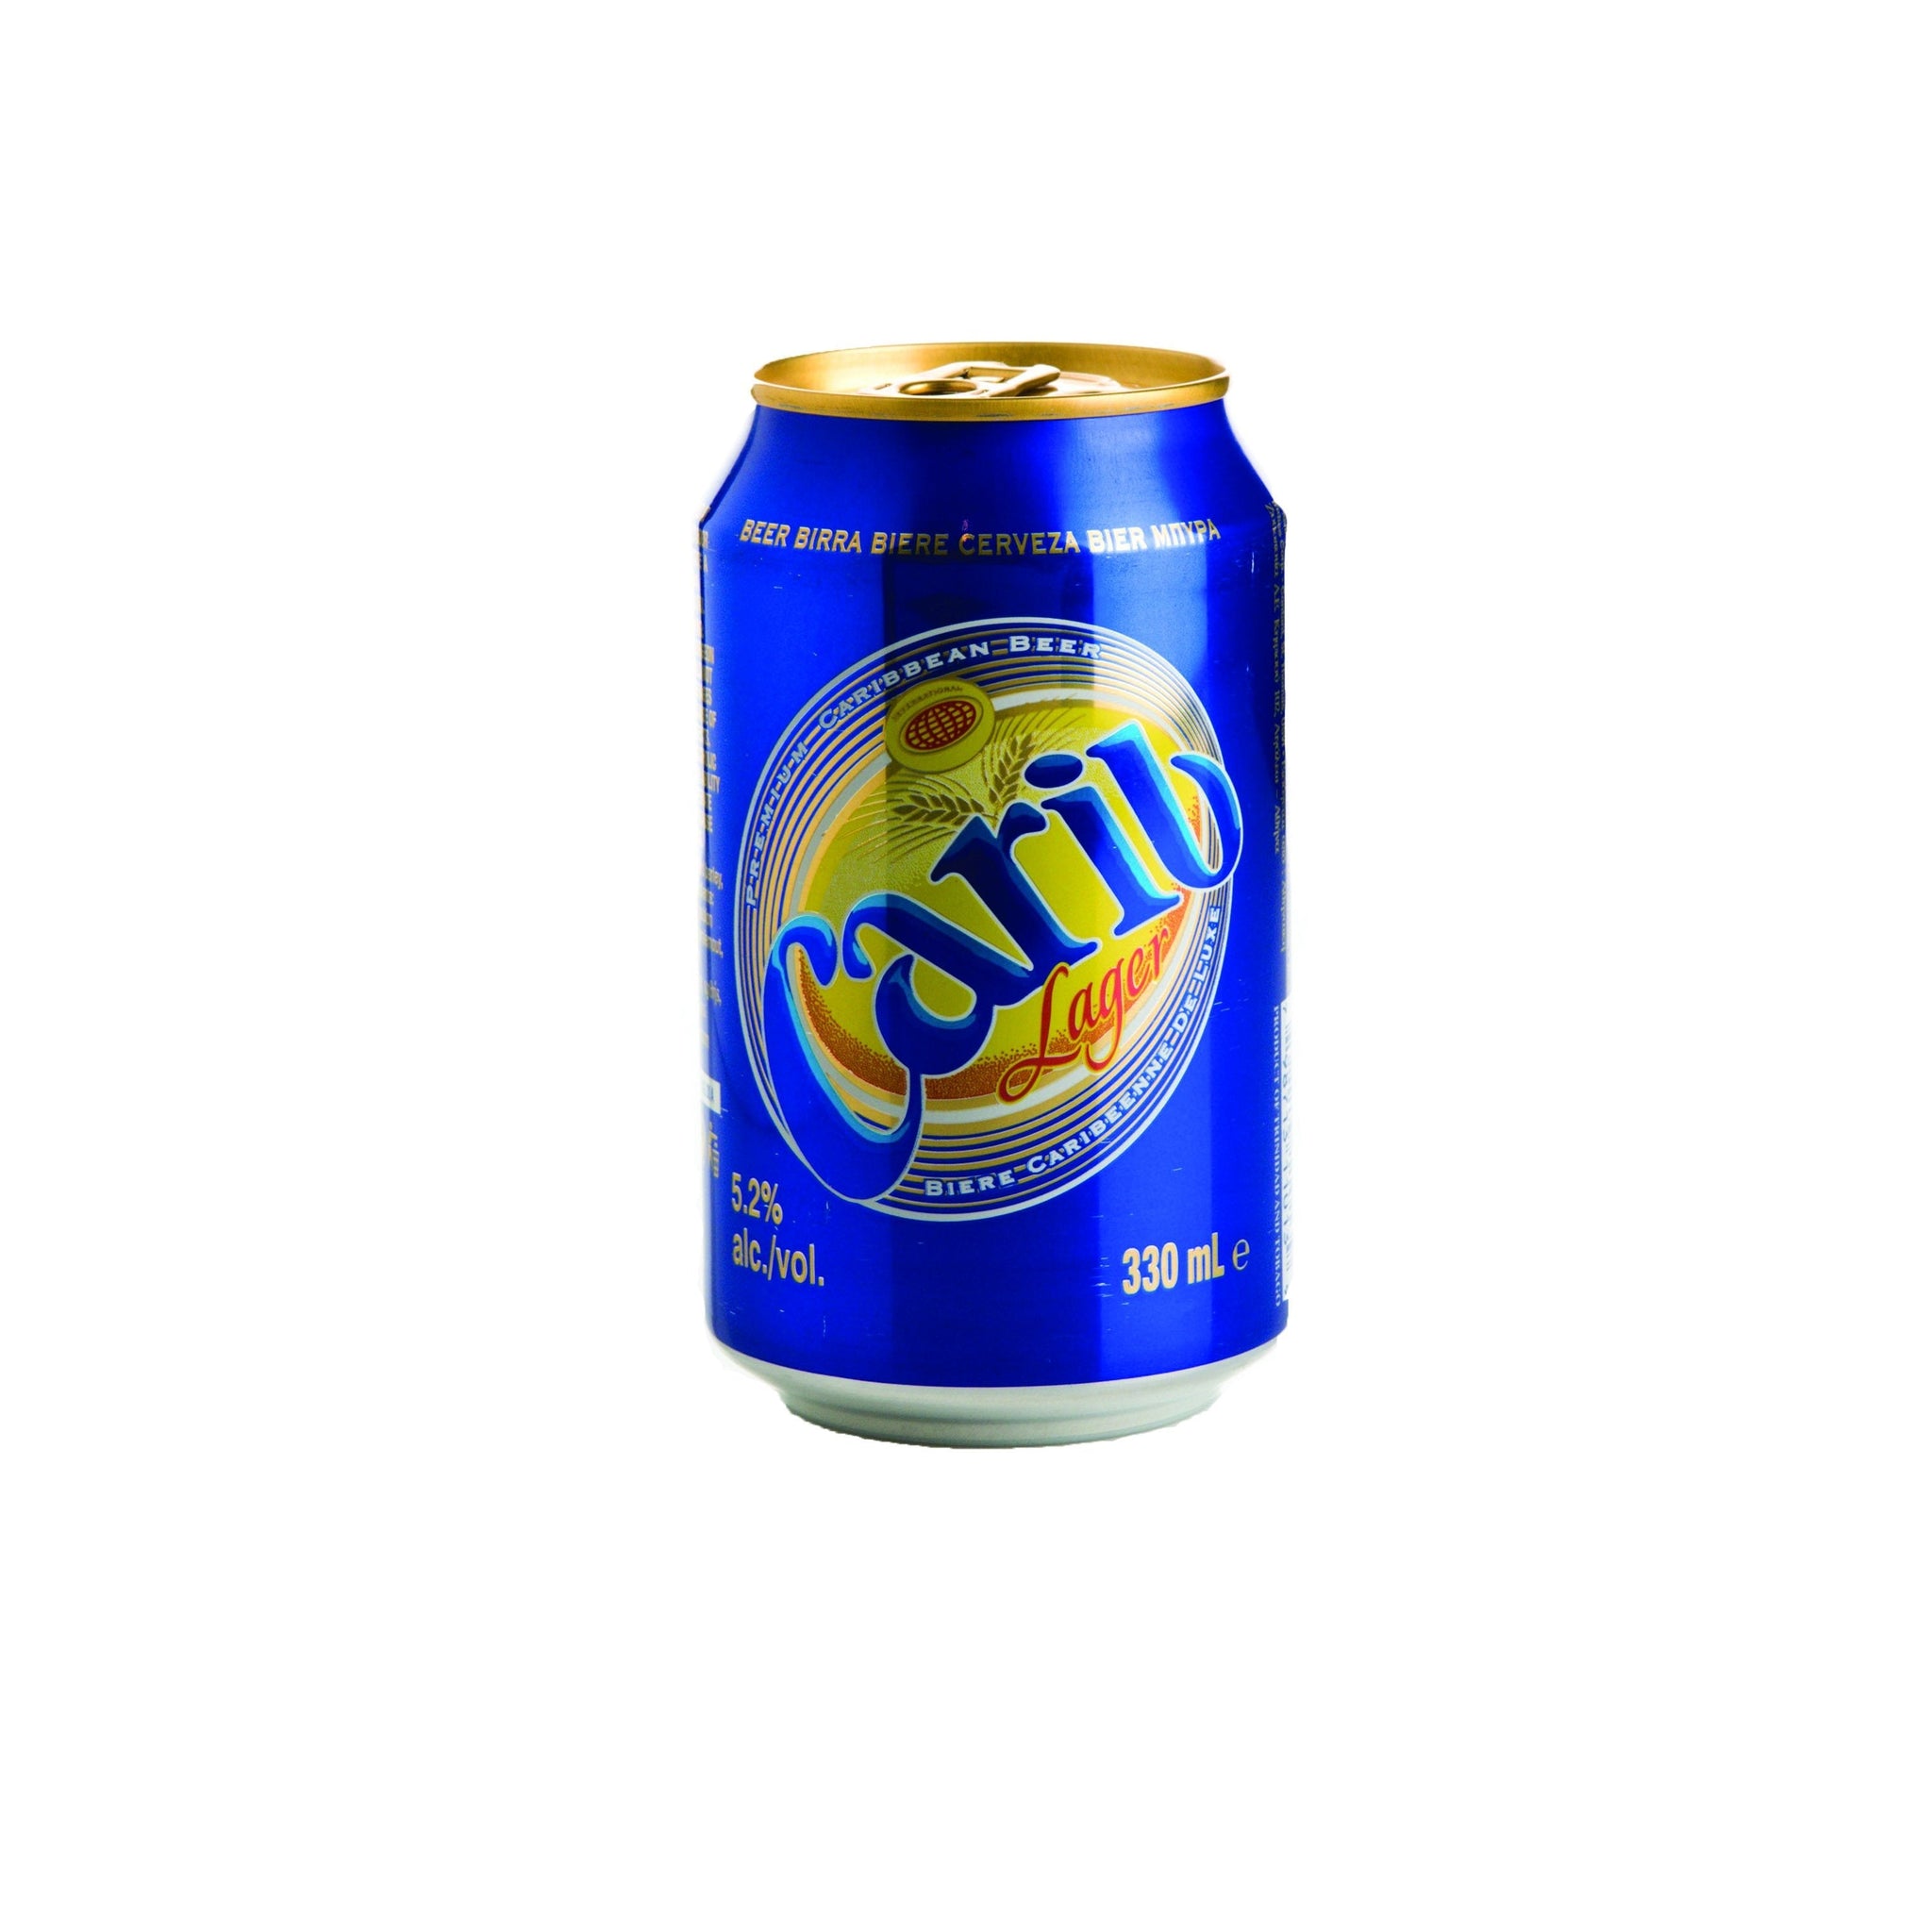 stm>Carib Beer, 24 pack